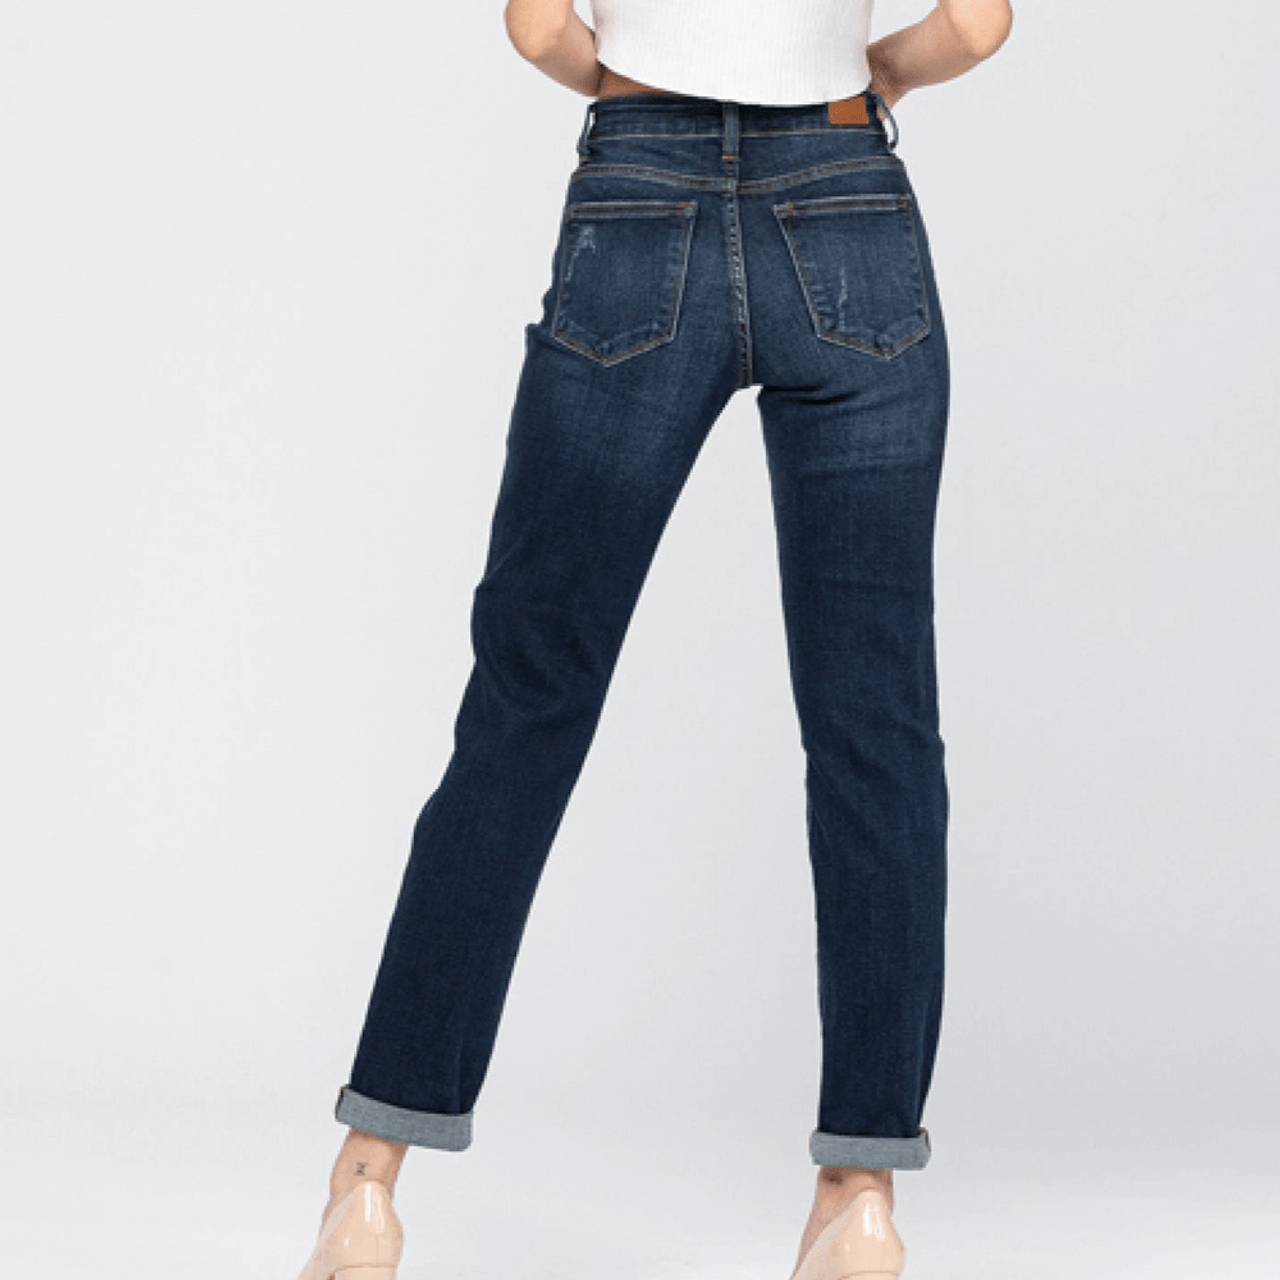 boter Een effectief Eigen Women's Judy Blue Tapered Slim Fit Jeans